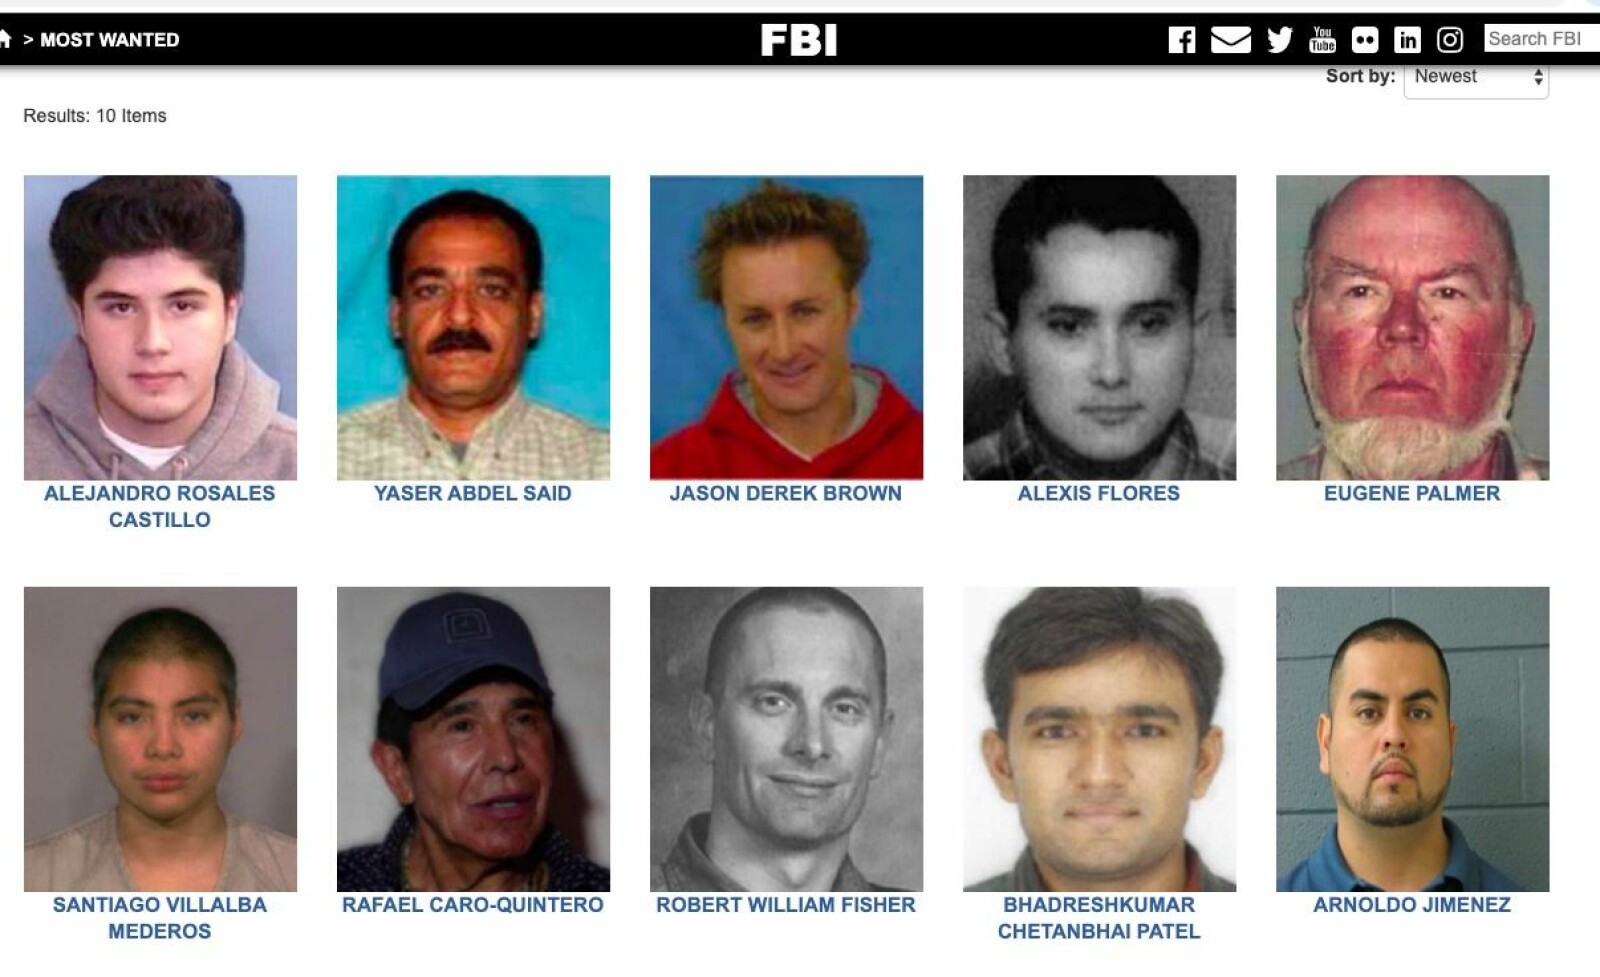 <b>FERSK LISTE:</b> Disse ti utgjorde listen over FBIs ti mest ettersøkte kriminelle i slutten av november 2019.